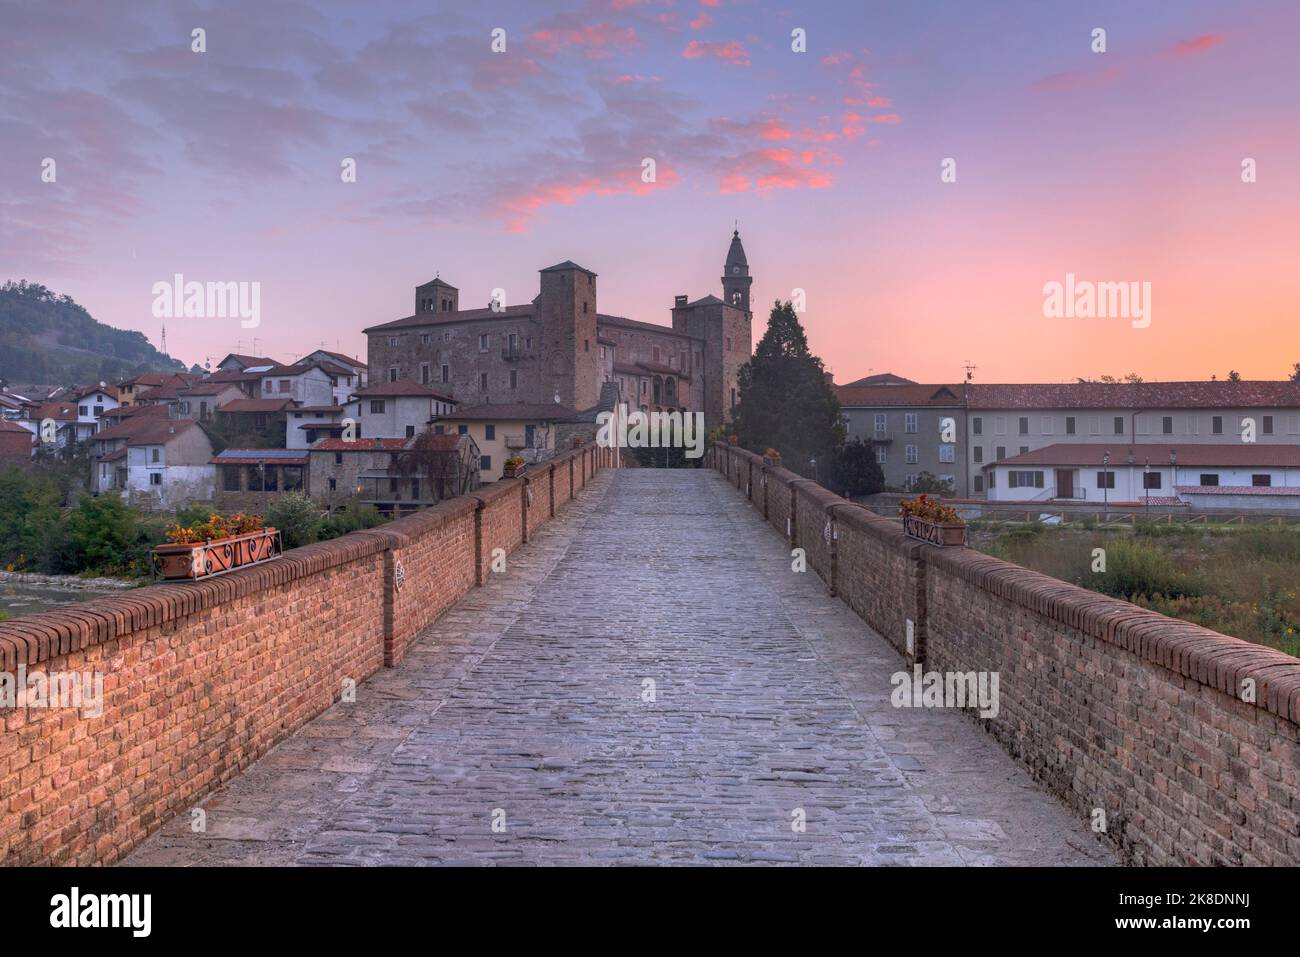 Monastero Bormida, Asti, Piamonte, Italia Foto de stock